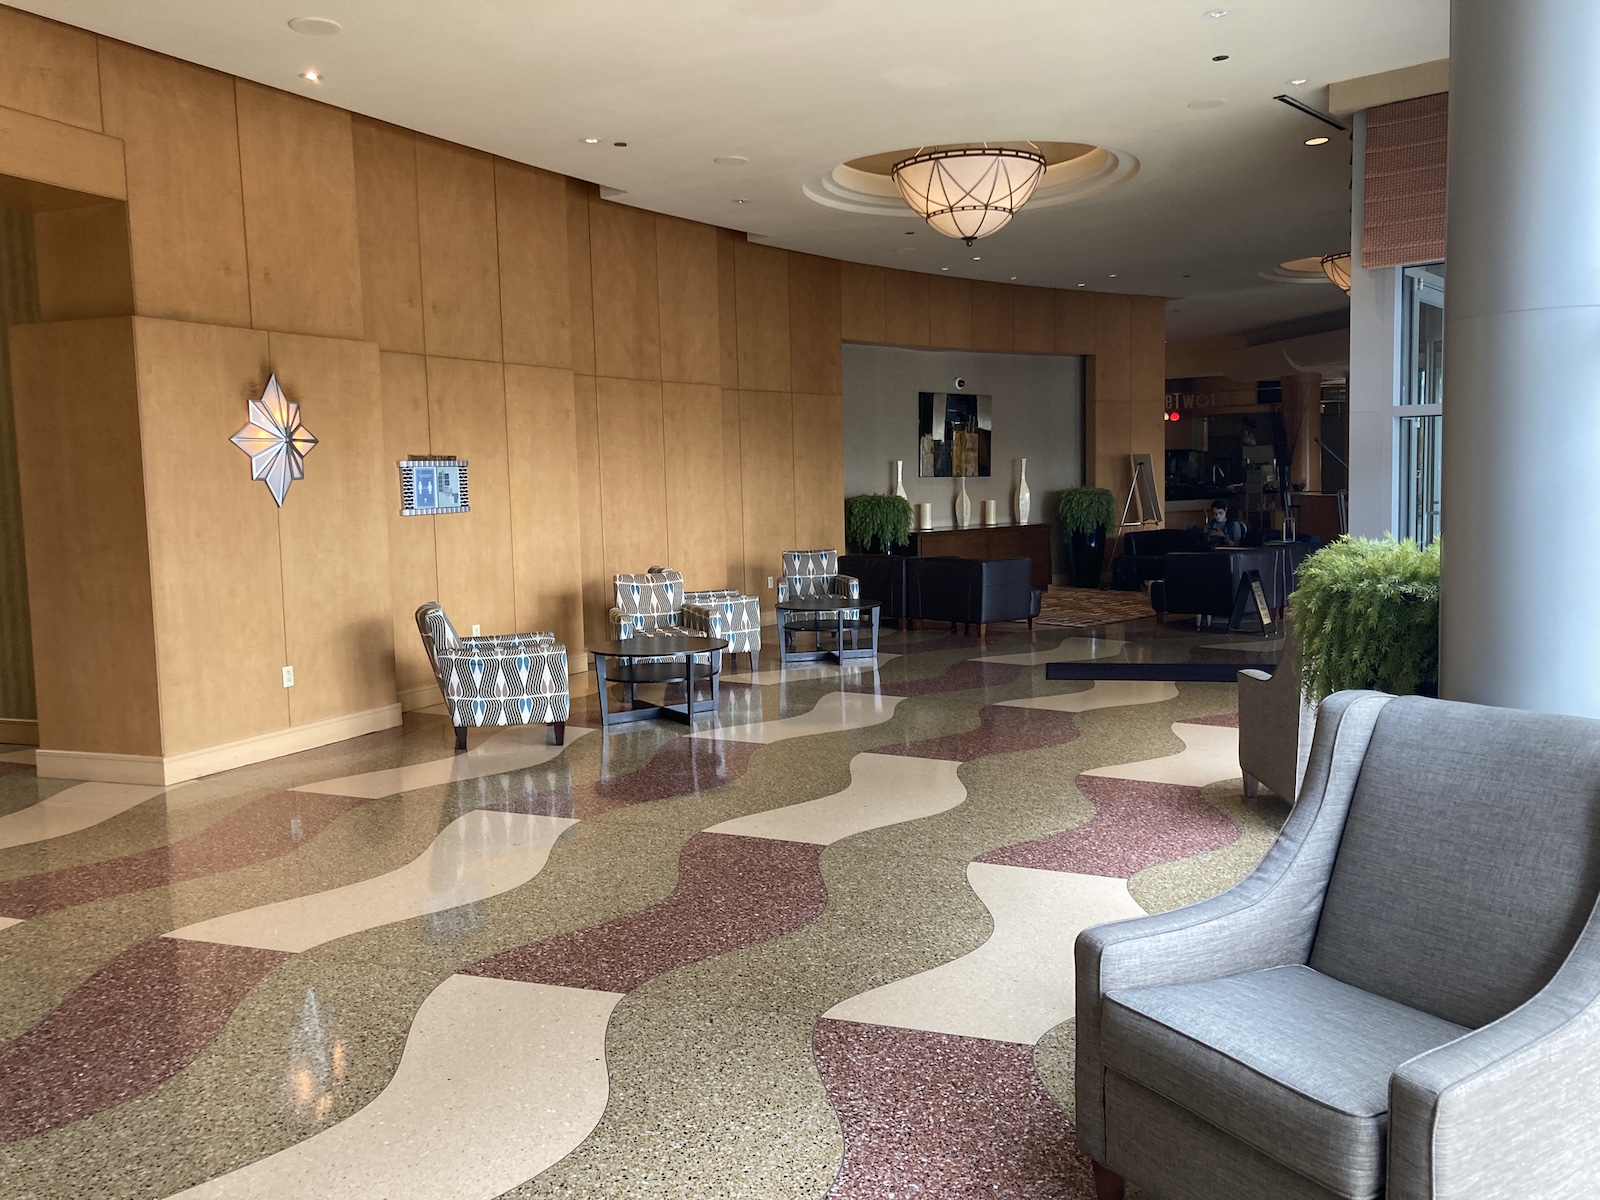 Hyatt Rosemont Review – Decent Hotel Near Chicago O’Hare